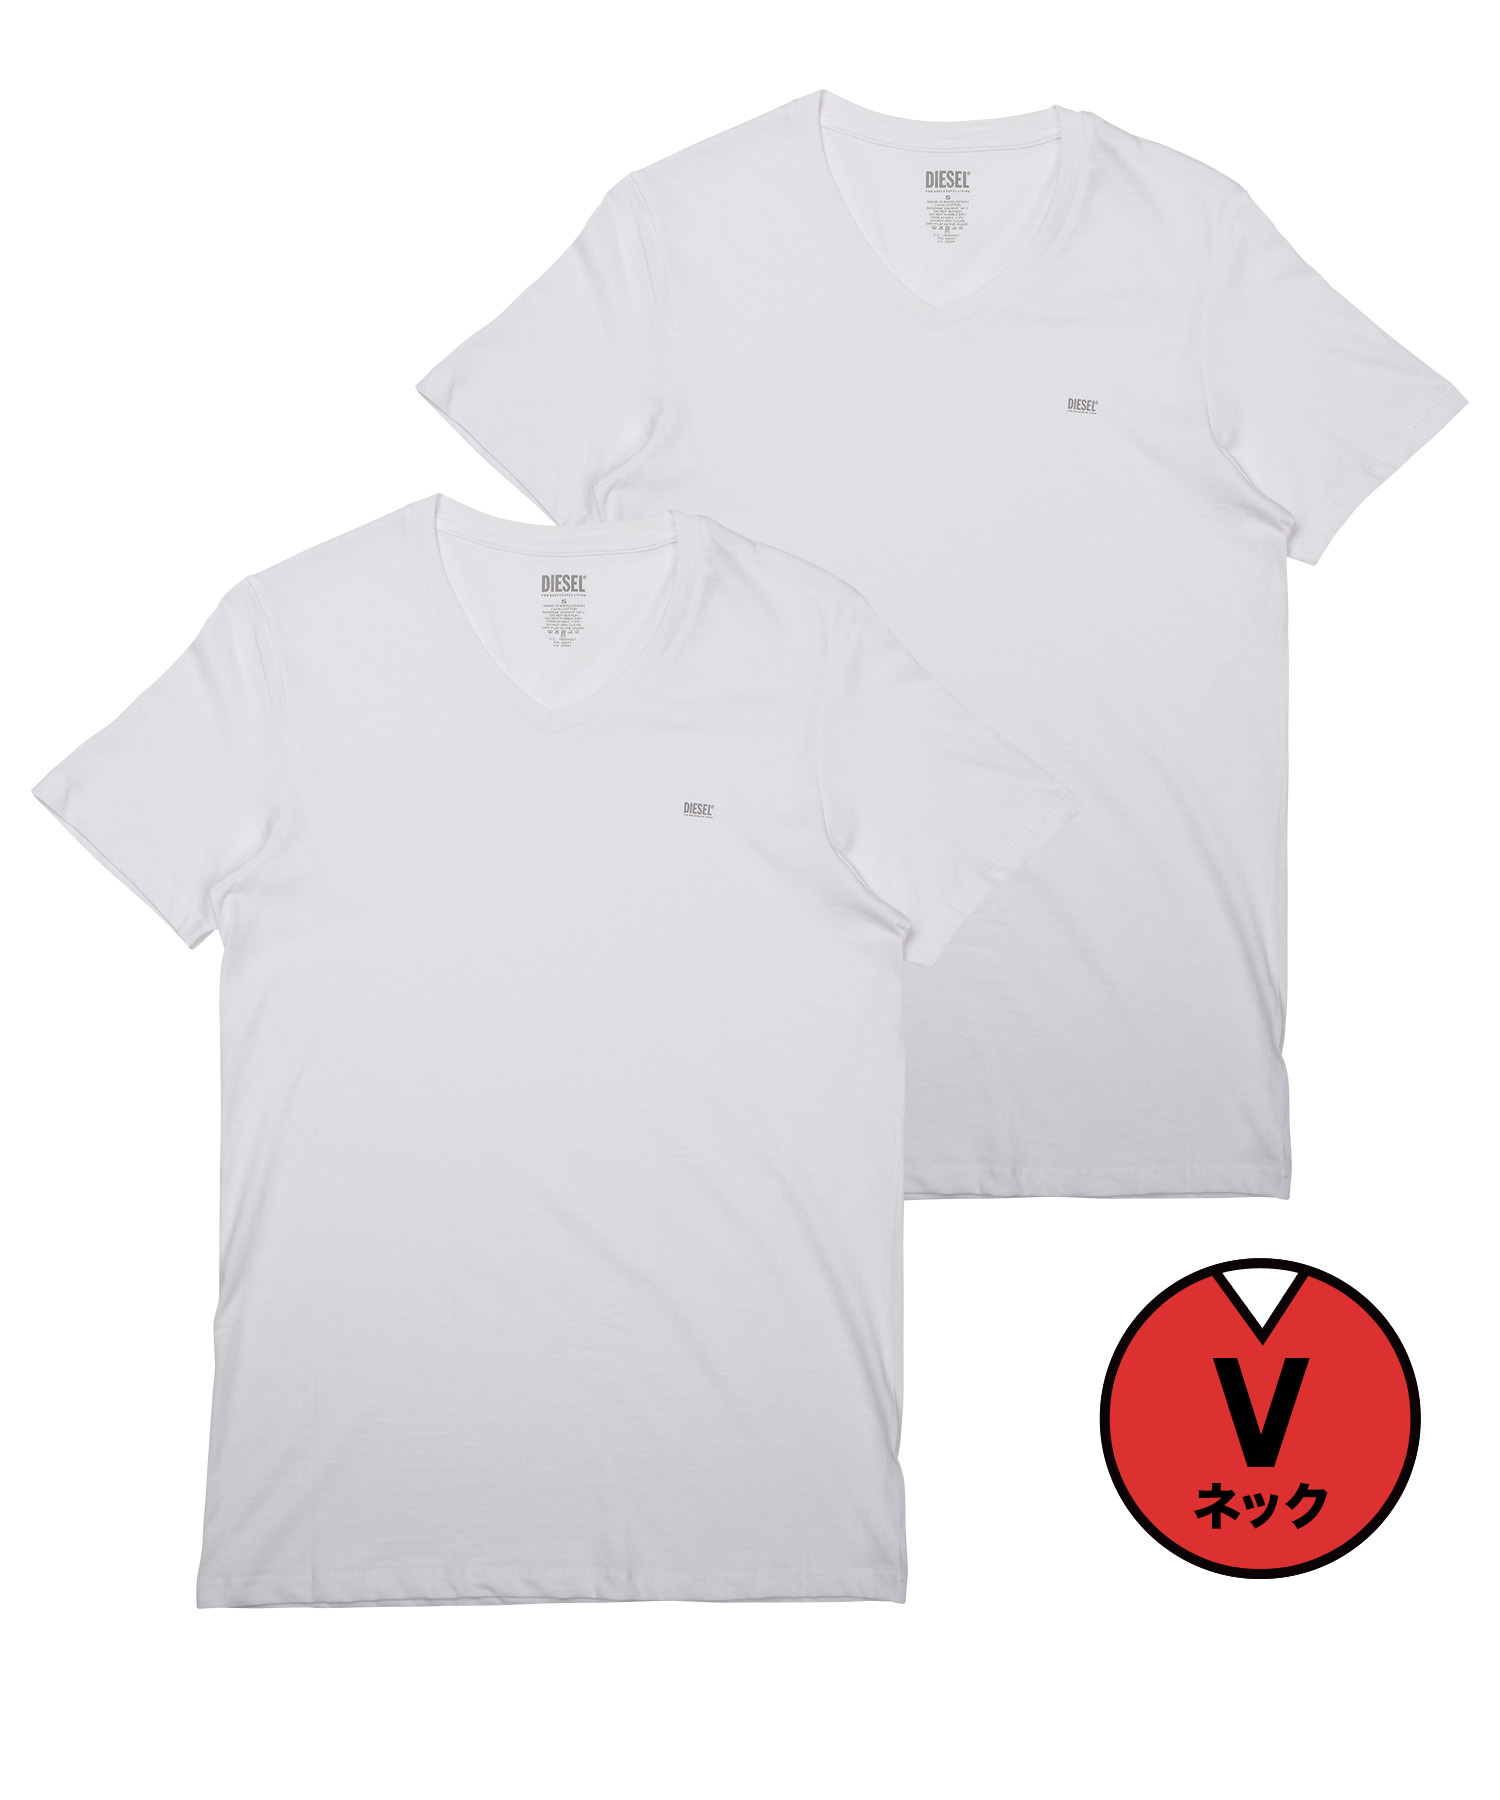 ディーゼル DIESEL Tシャツ 2枚セット メンズ 半袖 綿100% レディース ユニセックス ブランド 父の日